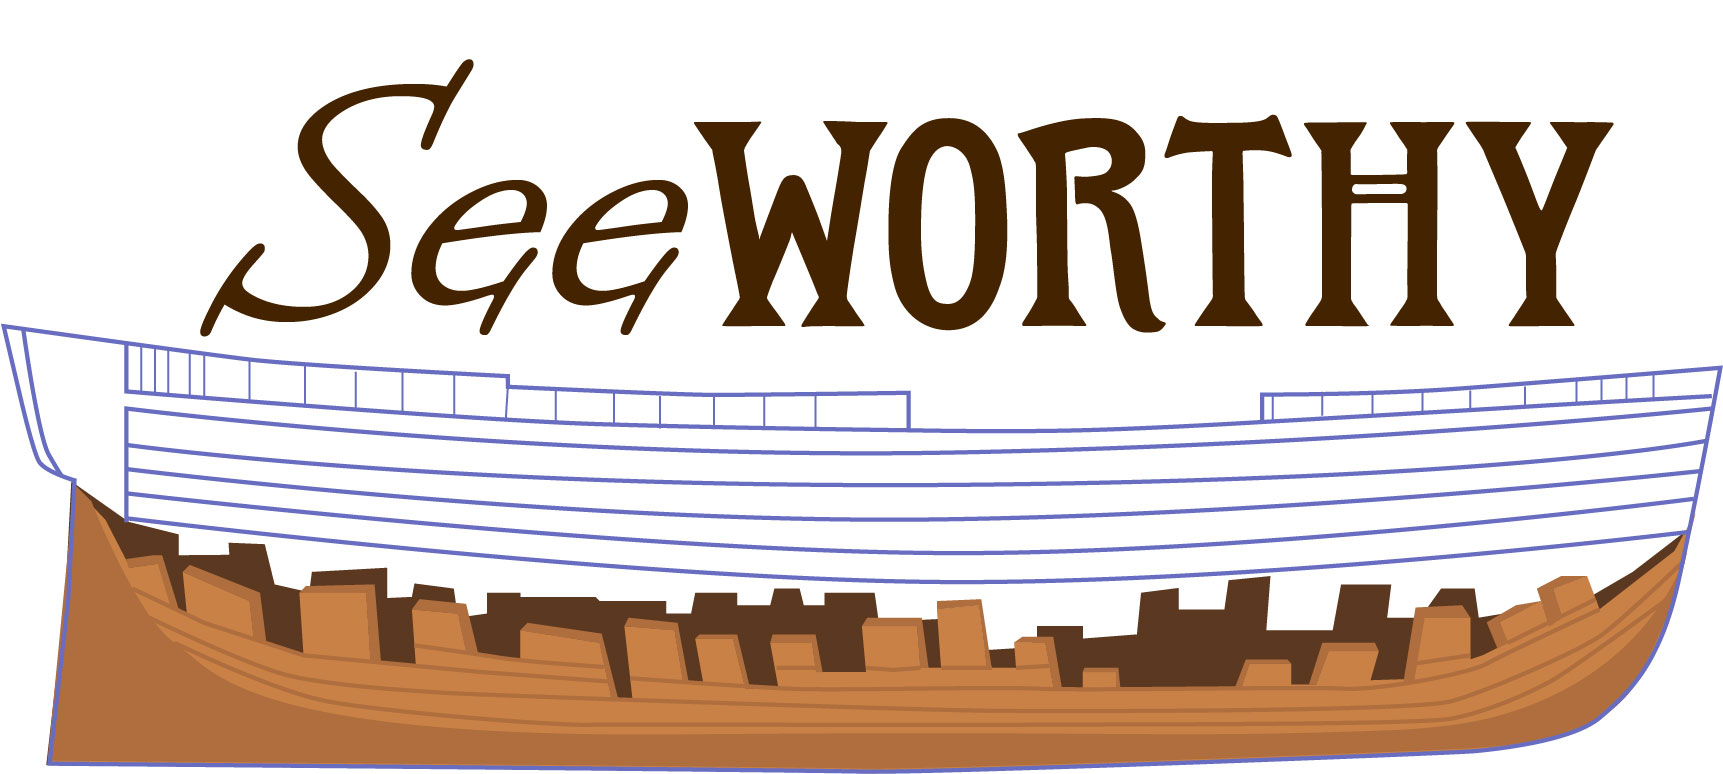 SeeWorthy Exhibit Logo